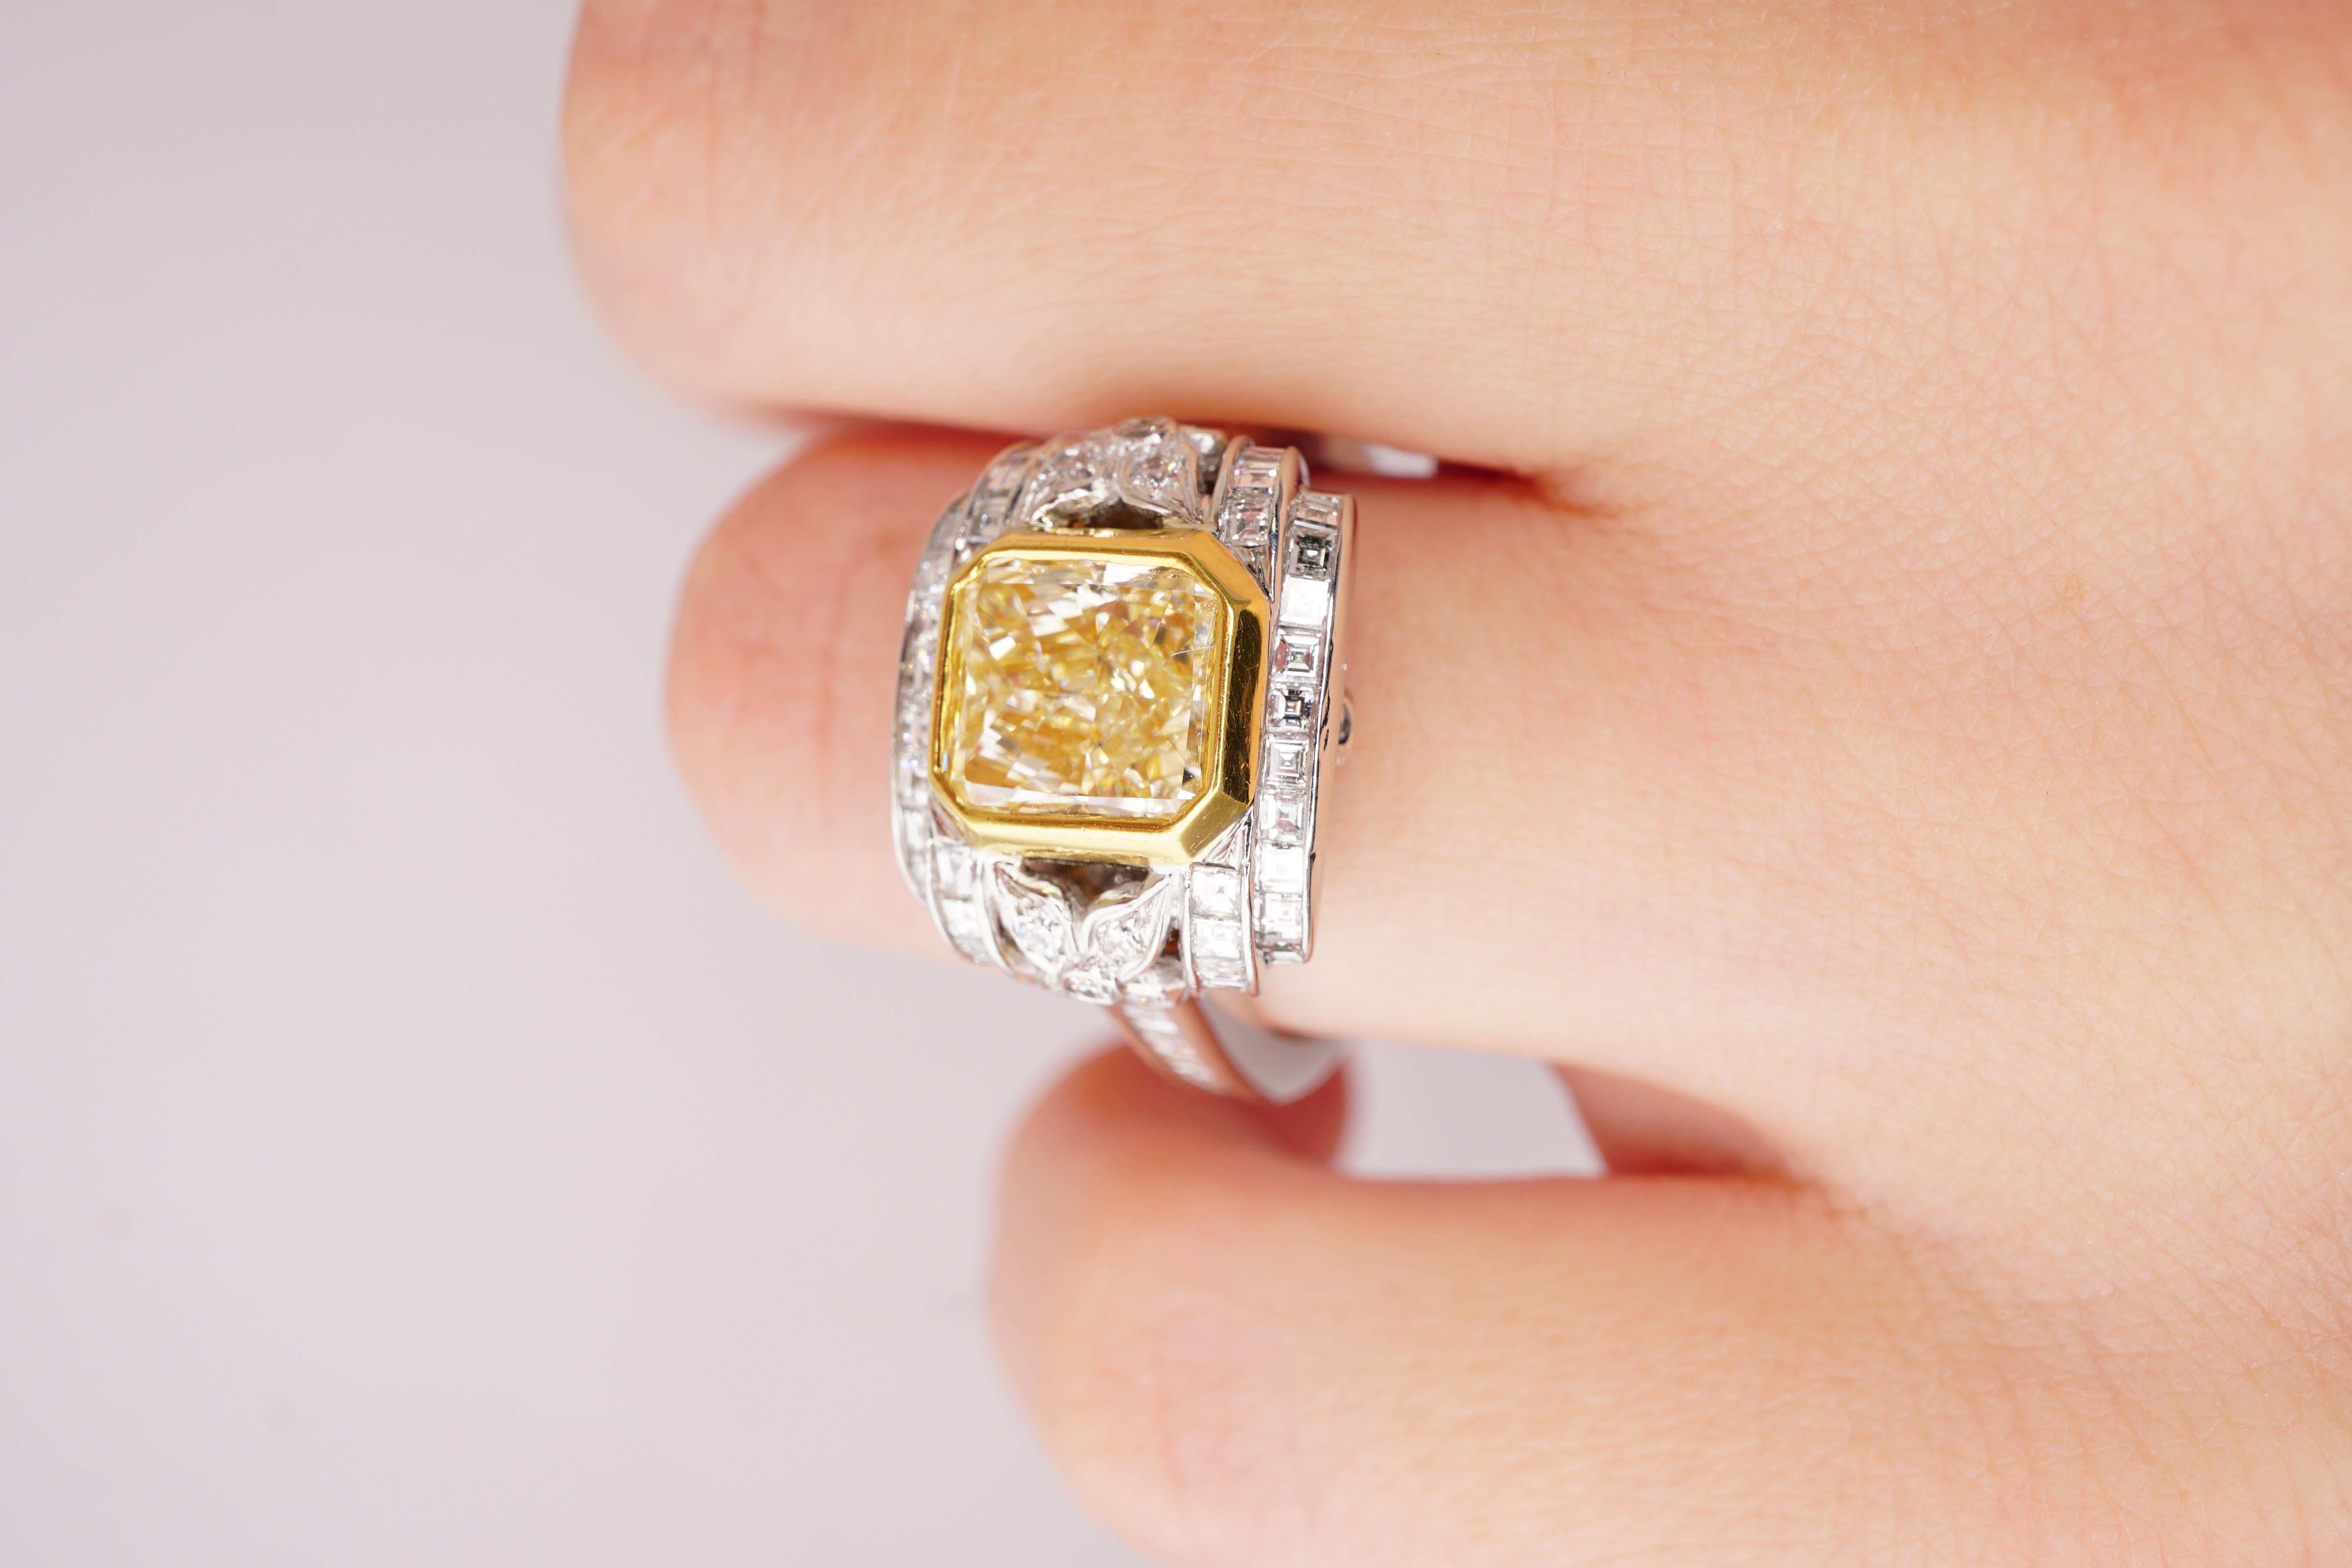 Diamant Platin Fancy Yellow Ring mit GIA Zertifikat, Nr.1162284198. Mittelstein: 2,23ct Diamant im Radiant-Schliff Fancy bis Fancy Light Yellow SI1, 7,3 x 6,7 mm. Seitliche Steine: 1,72ct E-F VS2 Diamanten im Carre-Schliff, Brillant rund: F-G